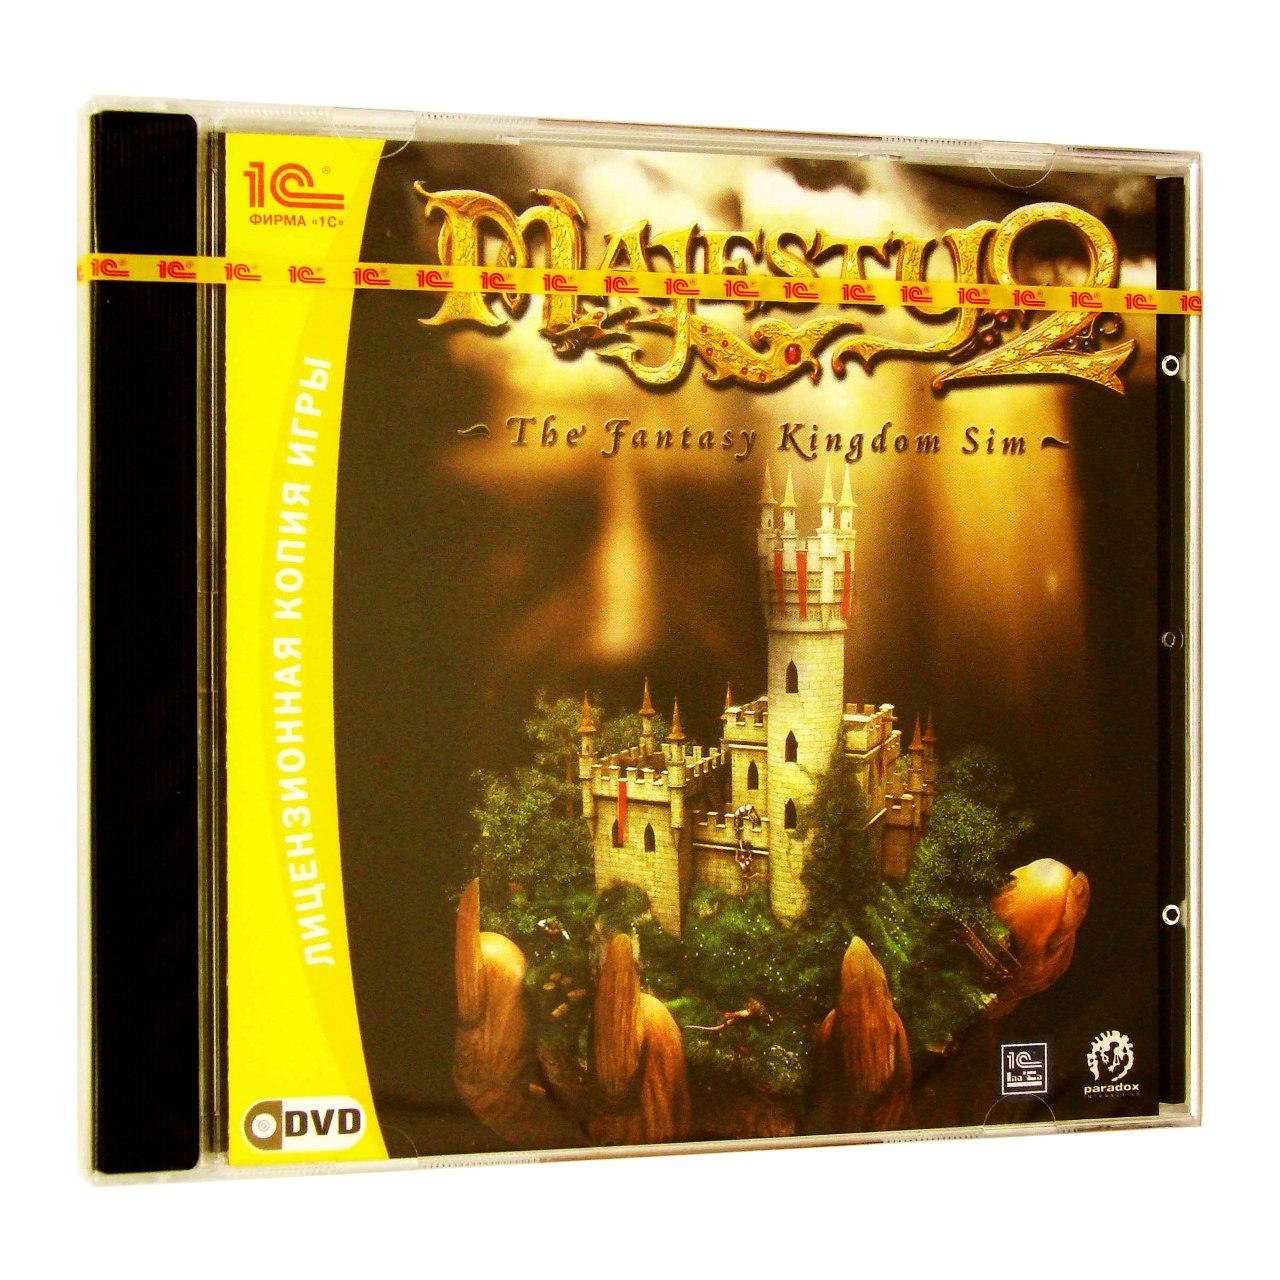 Компьютерный компакт-диск Majesty 2 (PC), фирма "1С", 1DVD